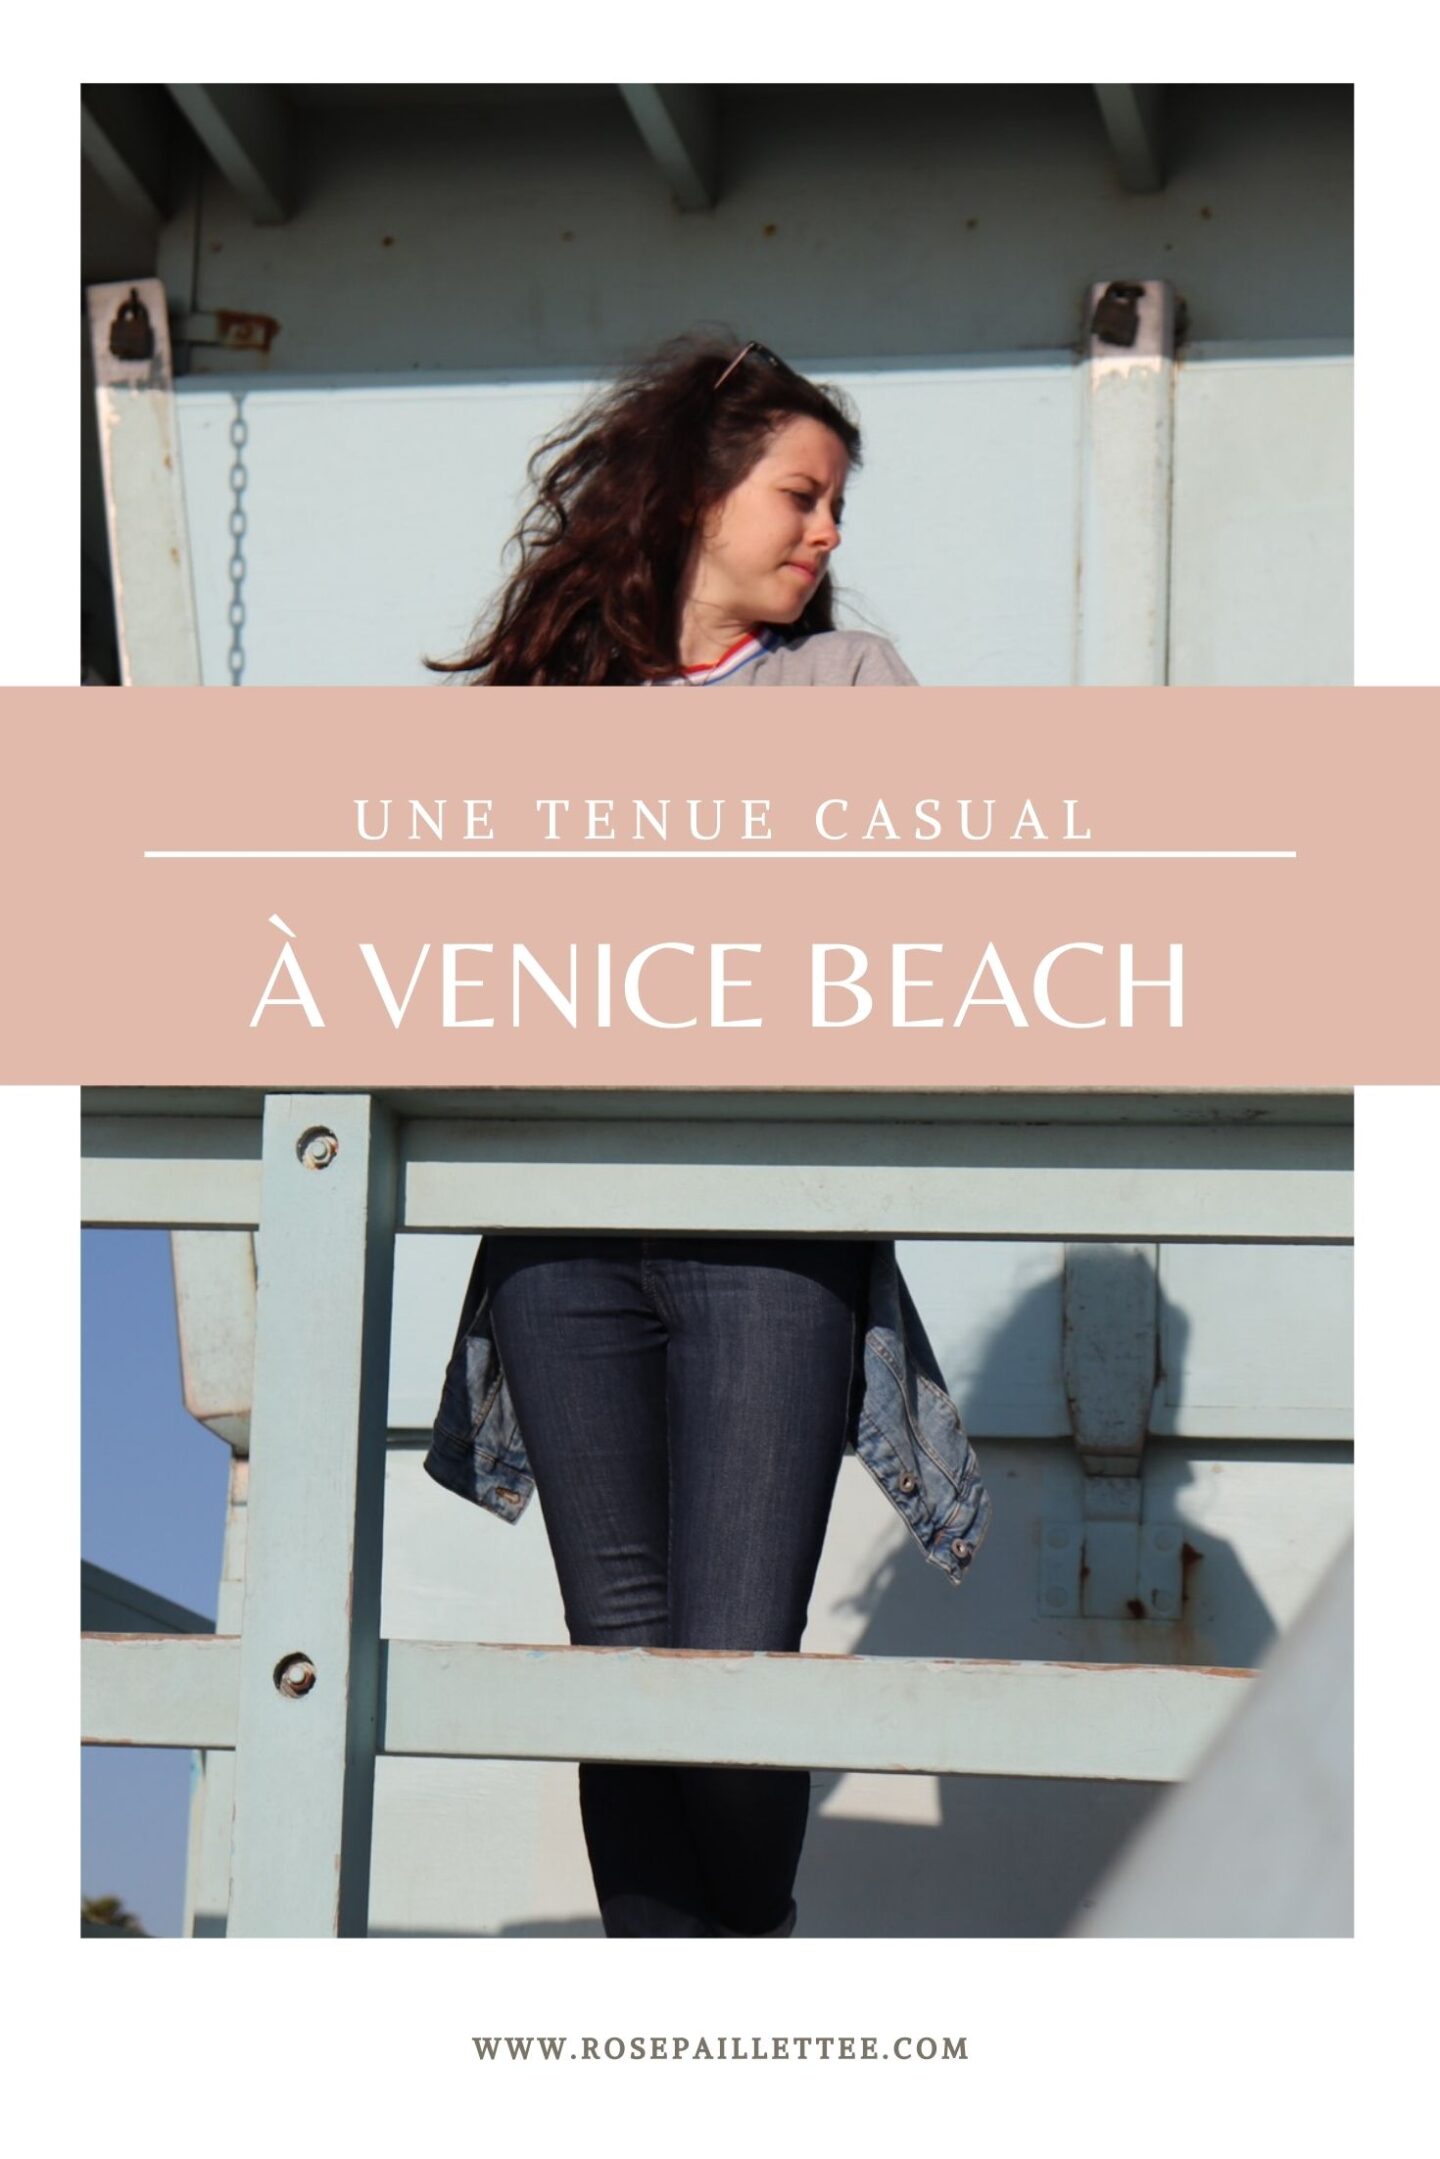 Une tenue casual à Venice beach